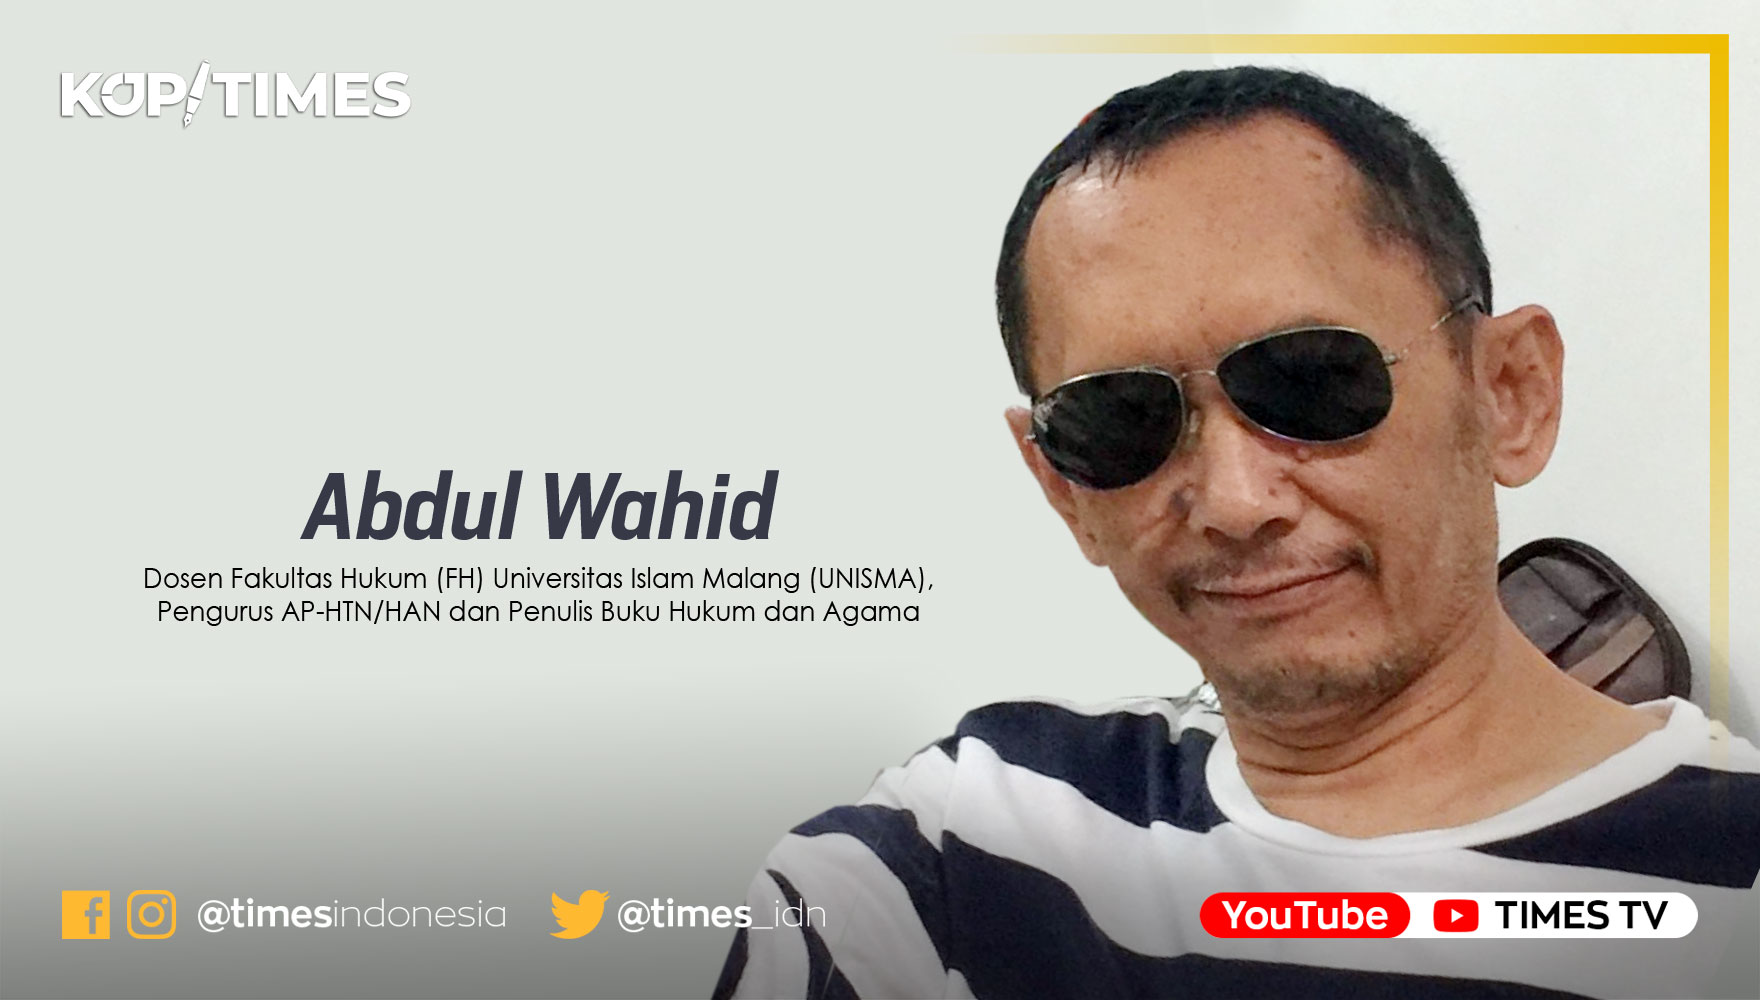 Abdul Wahid, Dosen Fakultas Hukum (FH) Uniersitas Islam Malang (UNISMA) dan Penulis buku Hukum dan Agama.